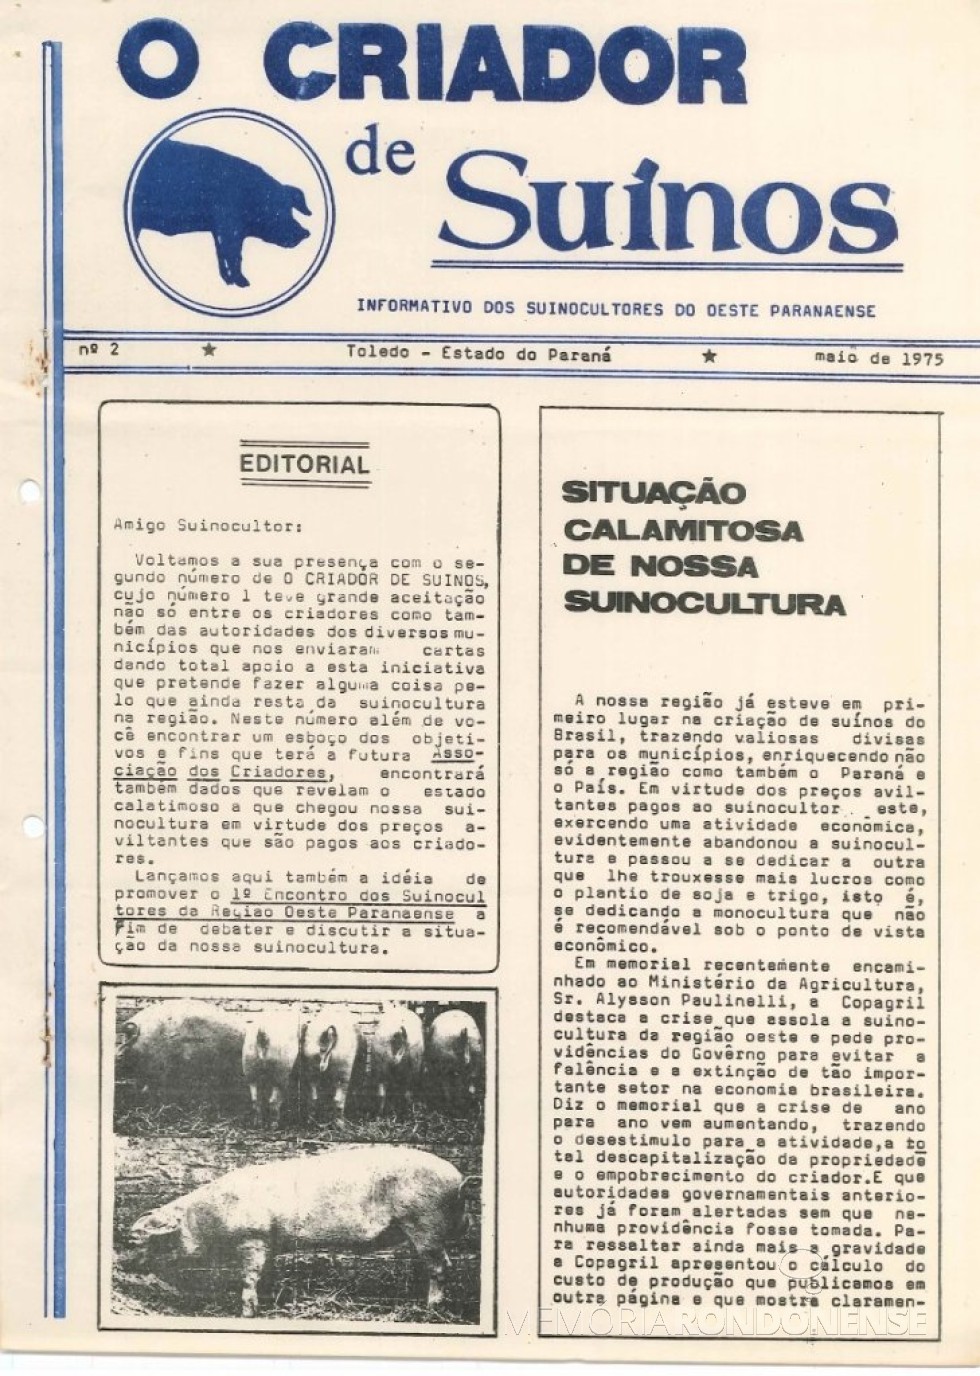 || Capa do informativo nº 2 dos Suinocultores do Oeste Paranaense, publicado em maio de 1975.
Imagem: Acervo Projeto Memória Rondonense - FOTO 16 - 